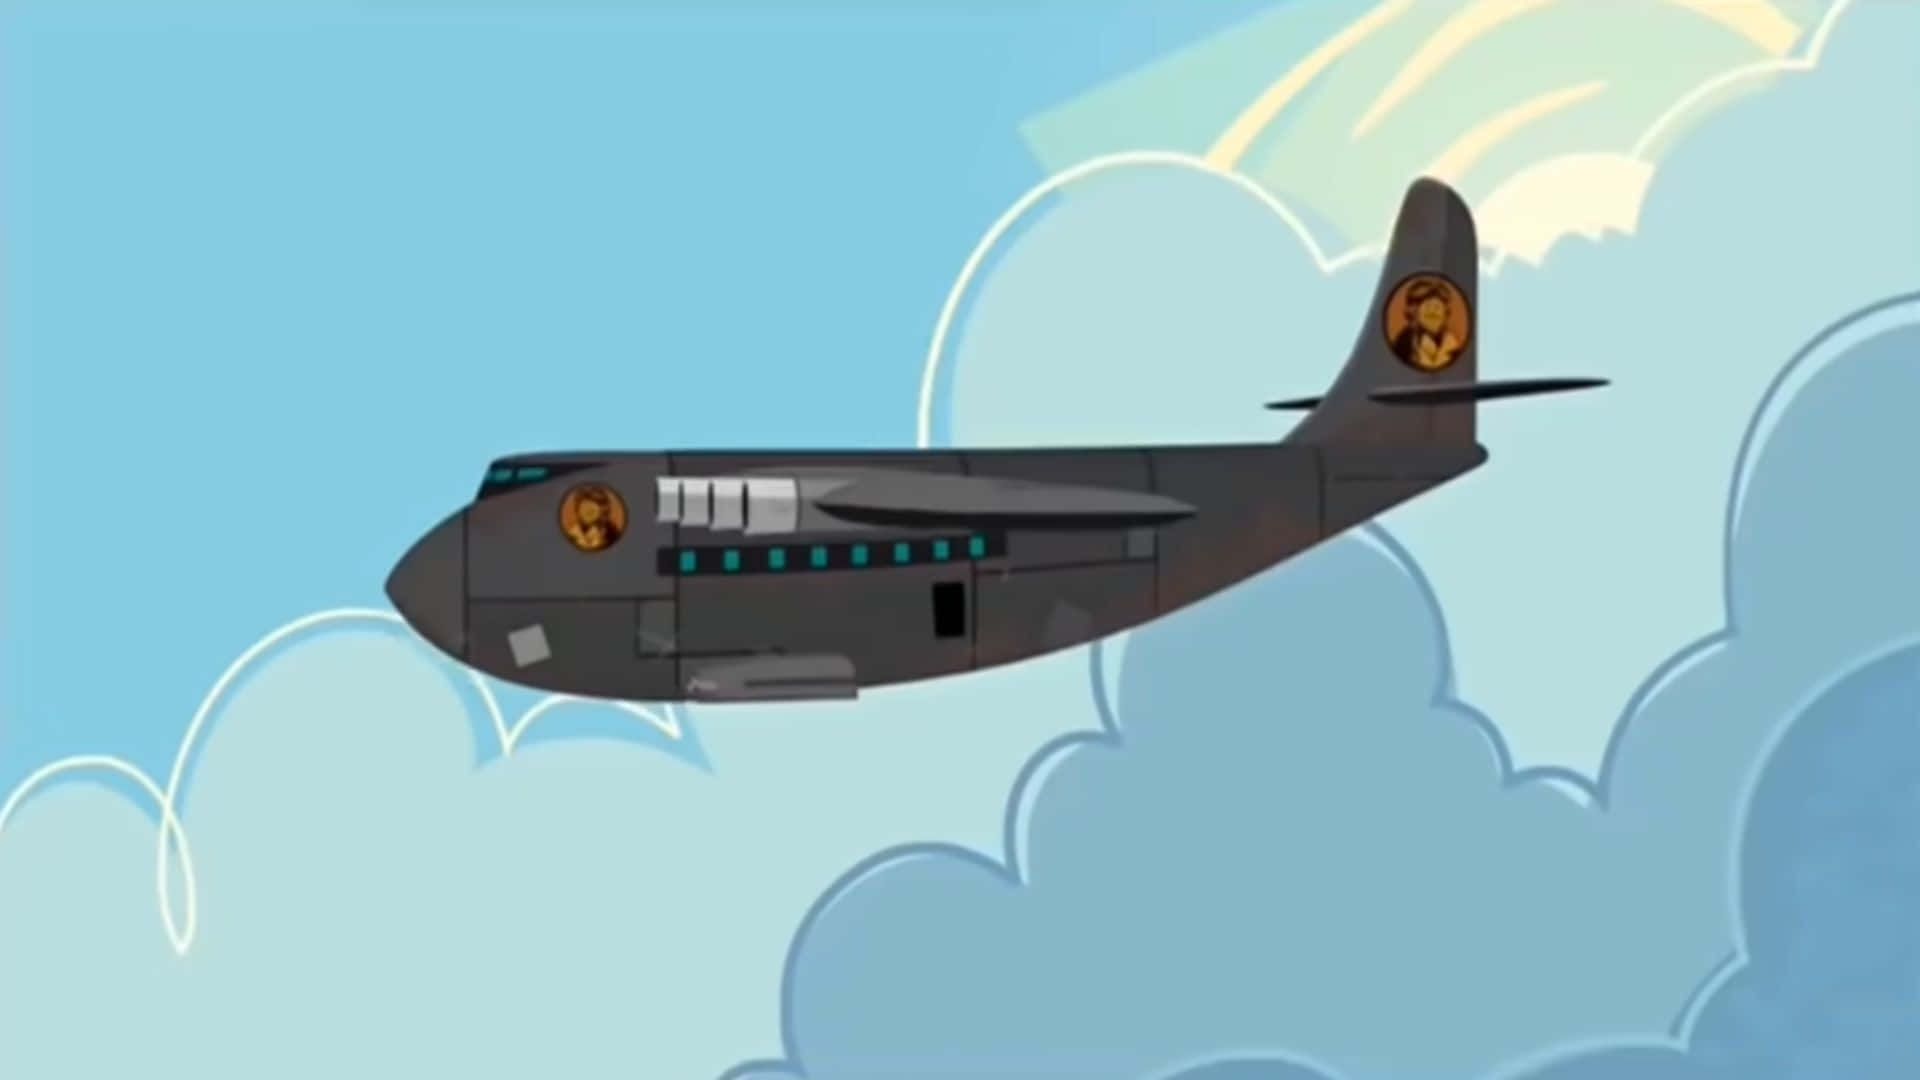 Awe-inspiring Vision Of Jumbo Jets In Flight